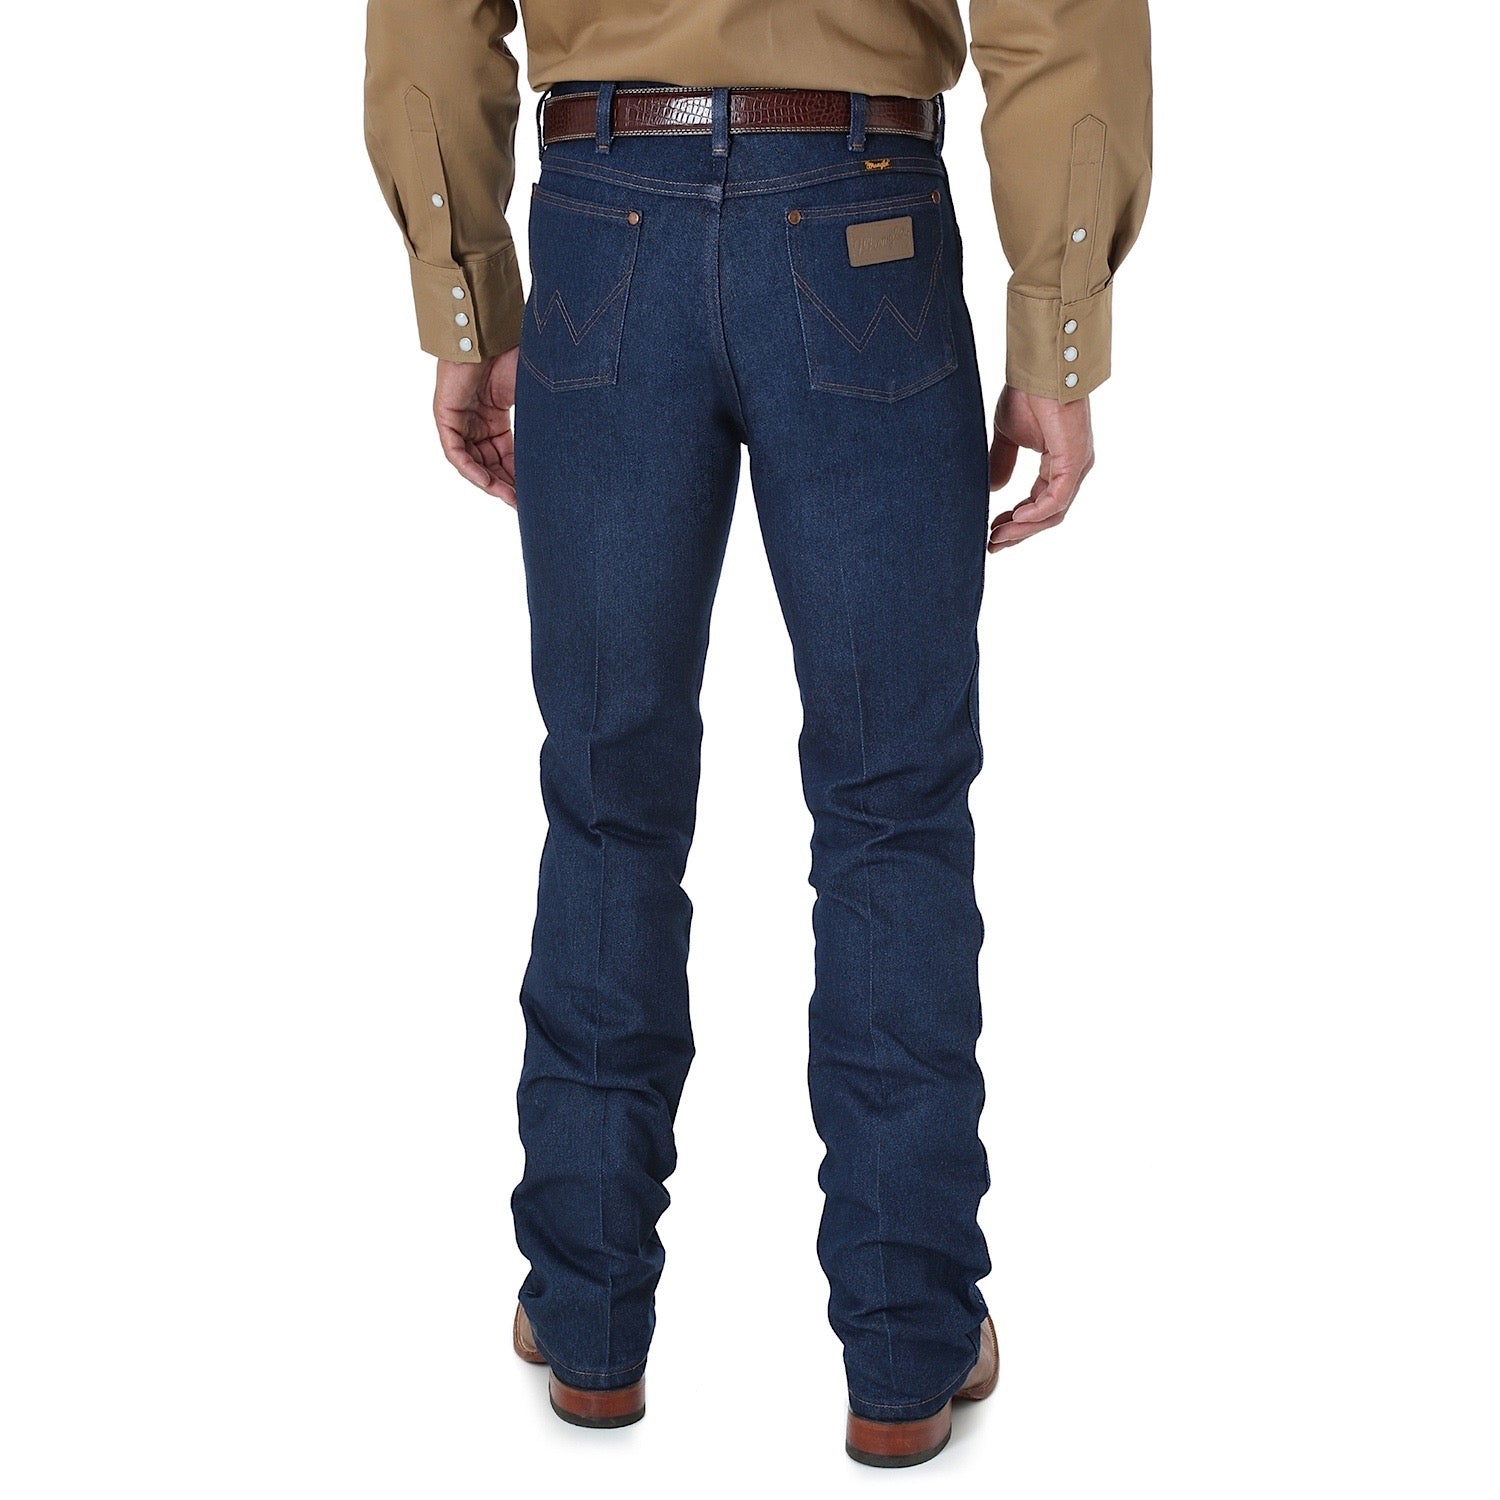 Buy Wrangler Mens Premium Cowboy Cut Regular Stretch Slim Fit Jean - 34